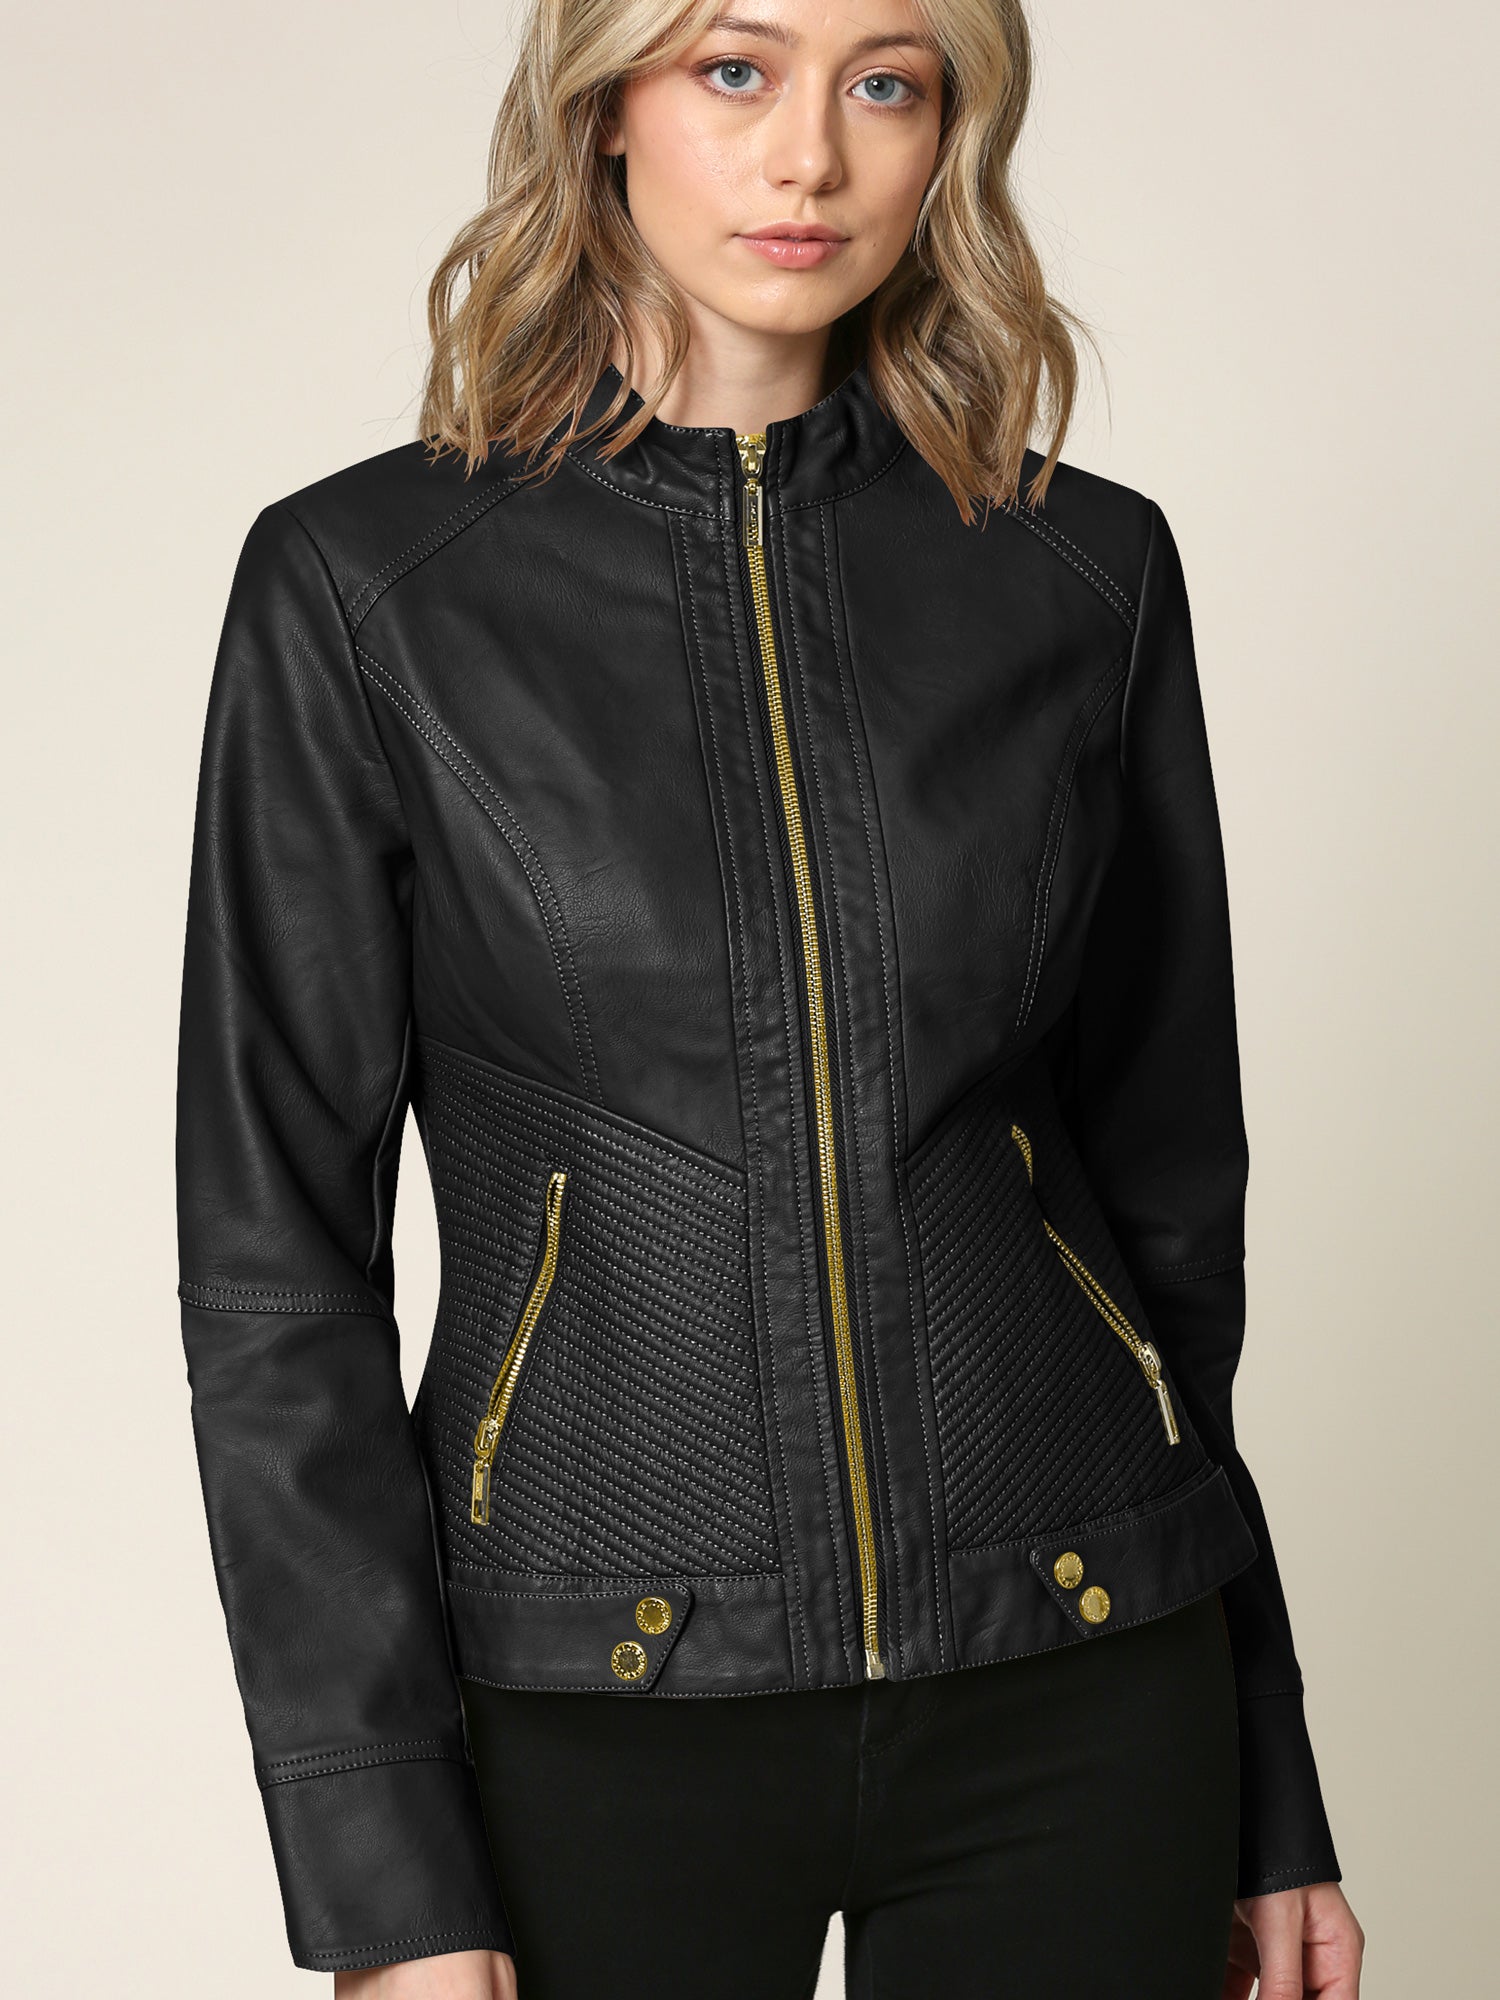 Ly Varey Lin Women Black Faux Leather Jackets Casual Short Oversized Coat Asymmetrical Motor Biker Jacket